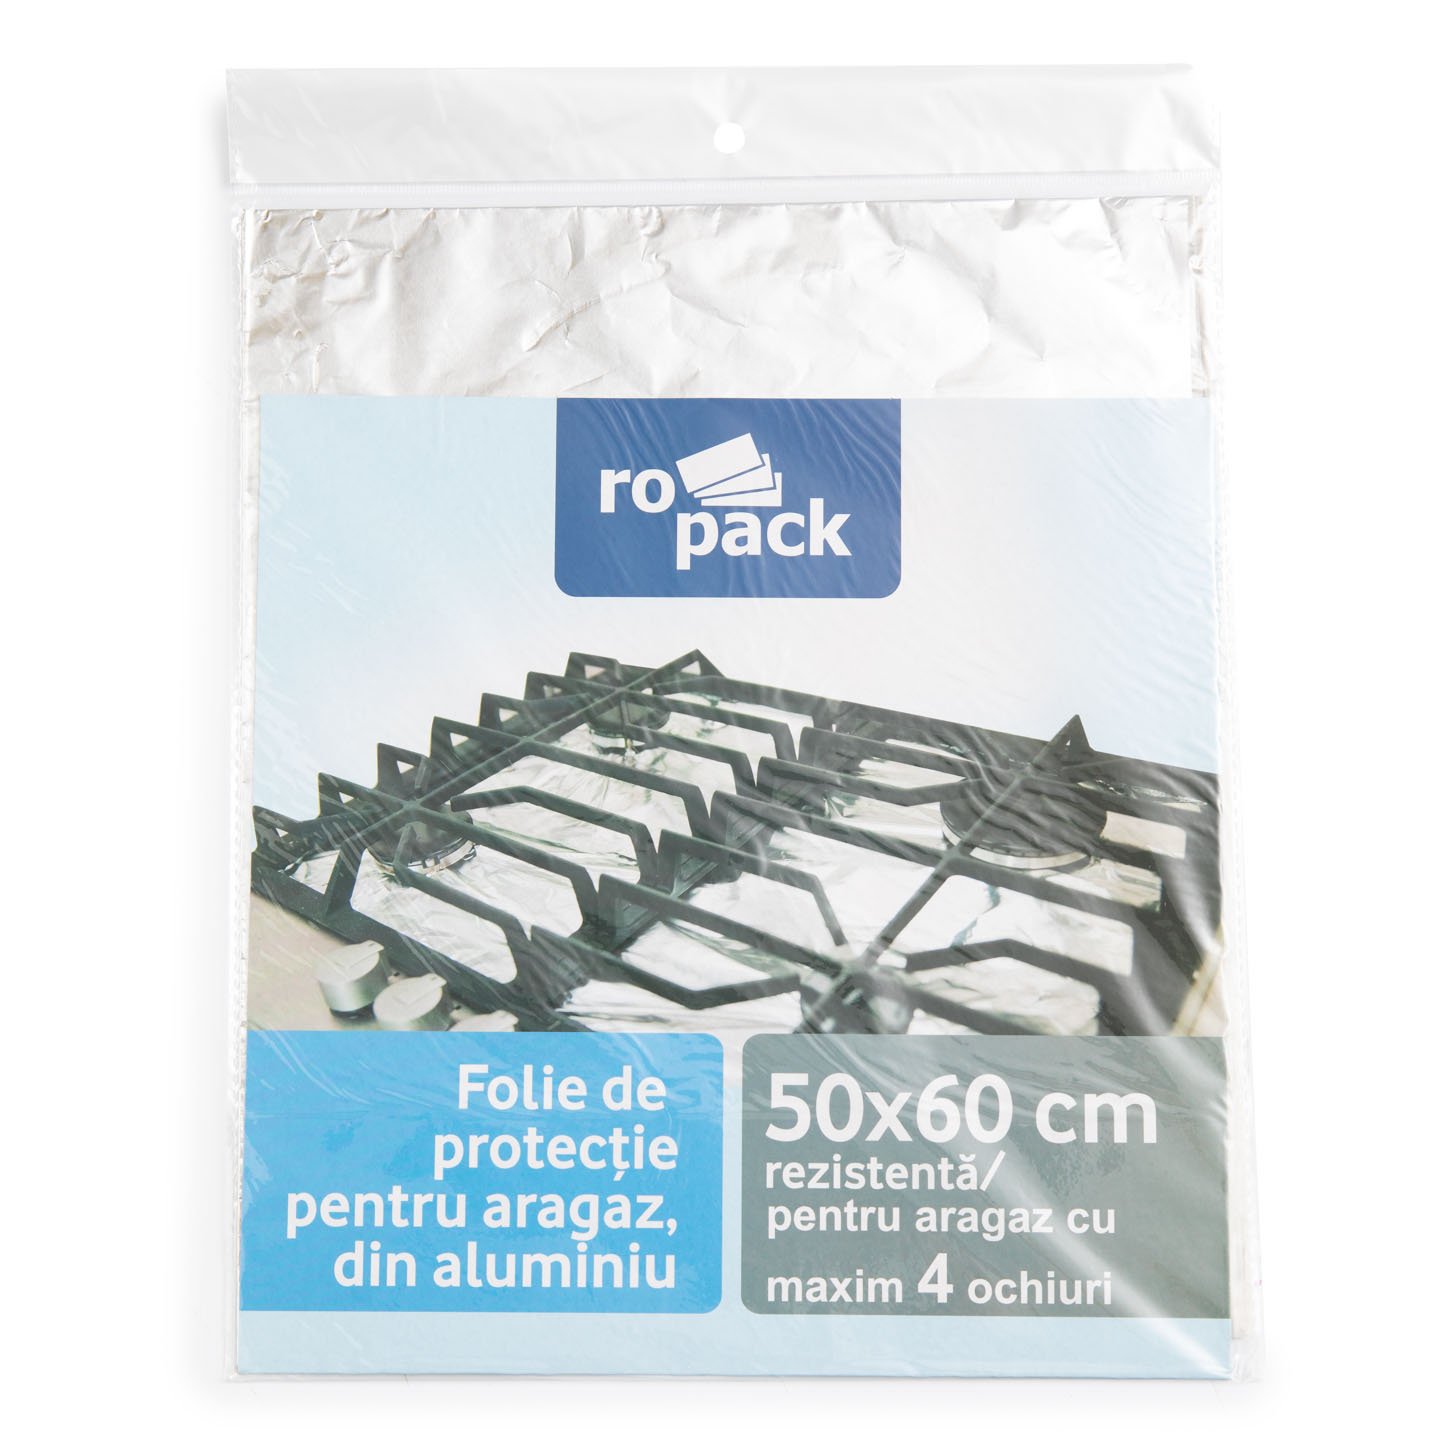 Folie de protecție pentru aragaz,din aluminiu Ro Pack 50cm x 60cm